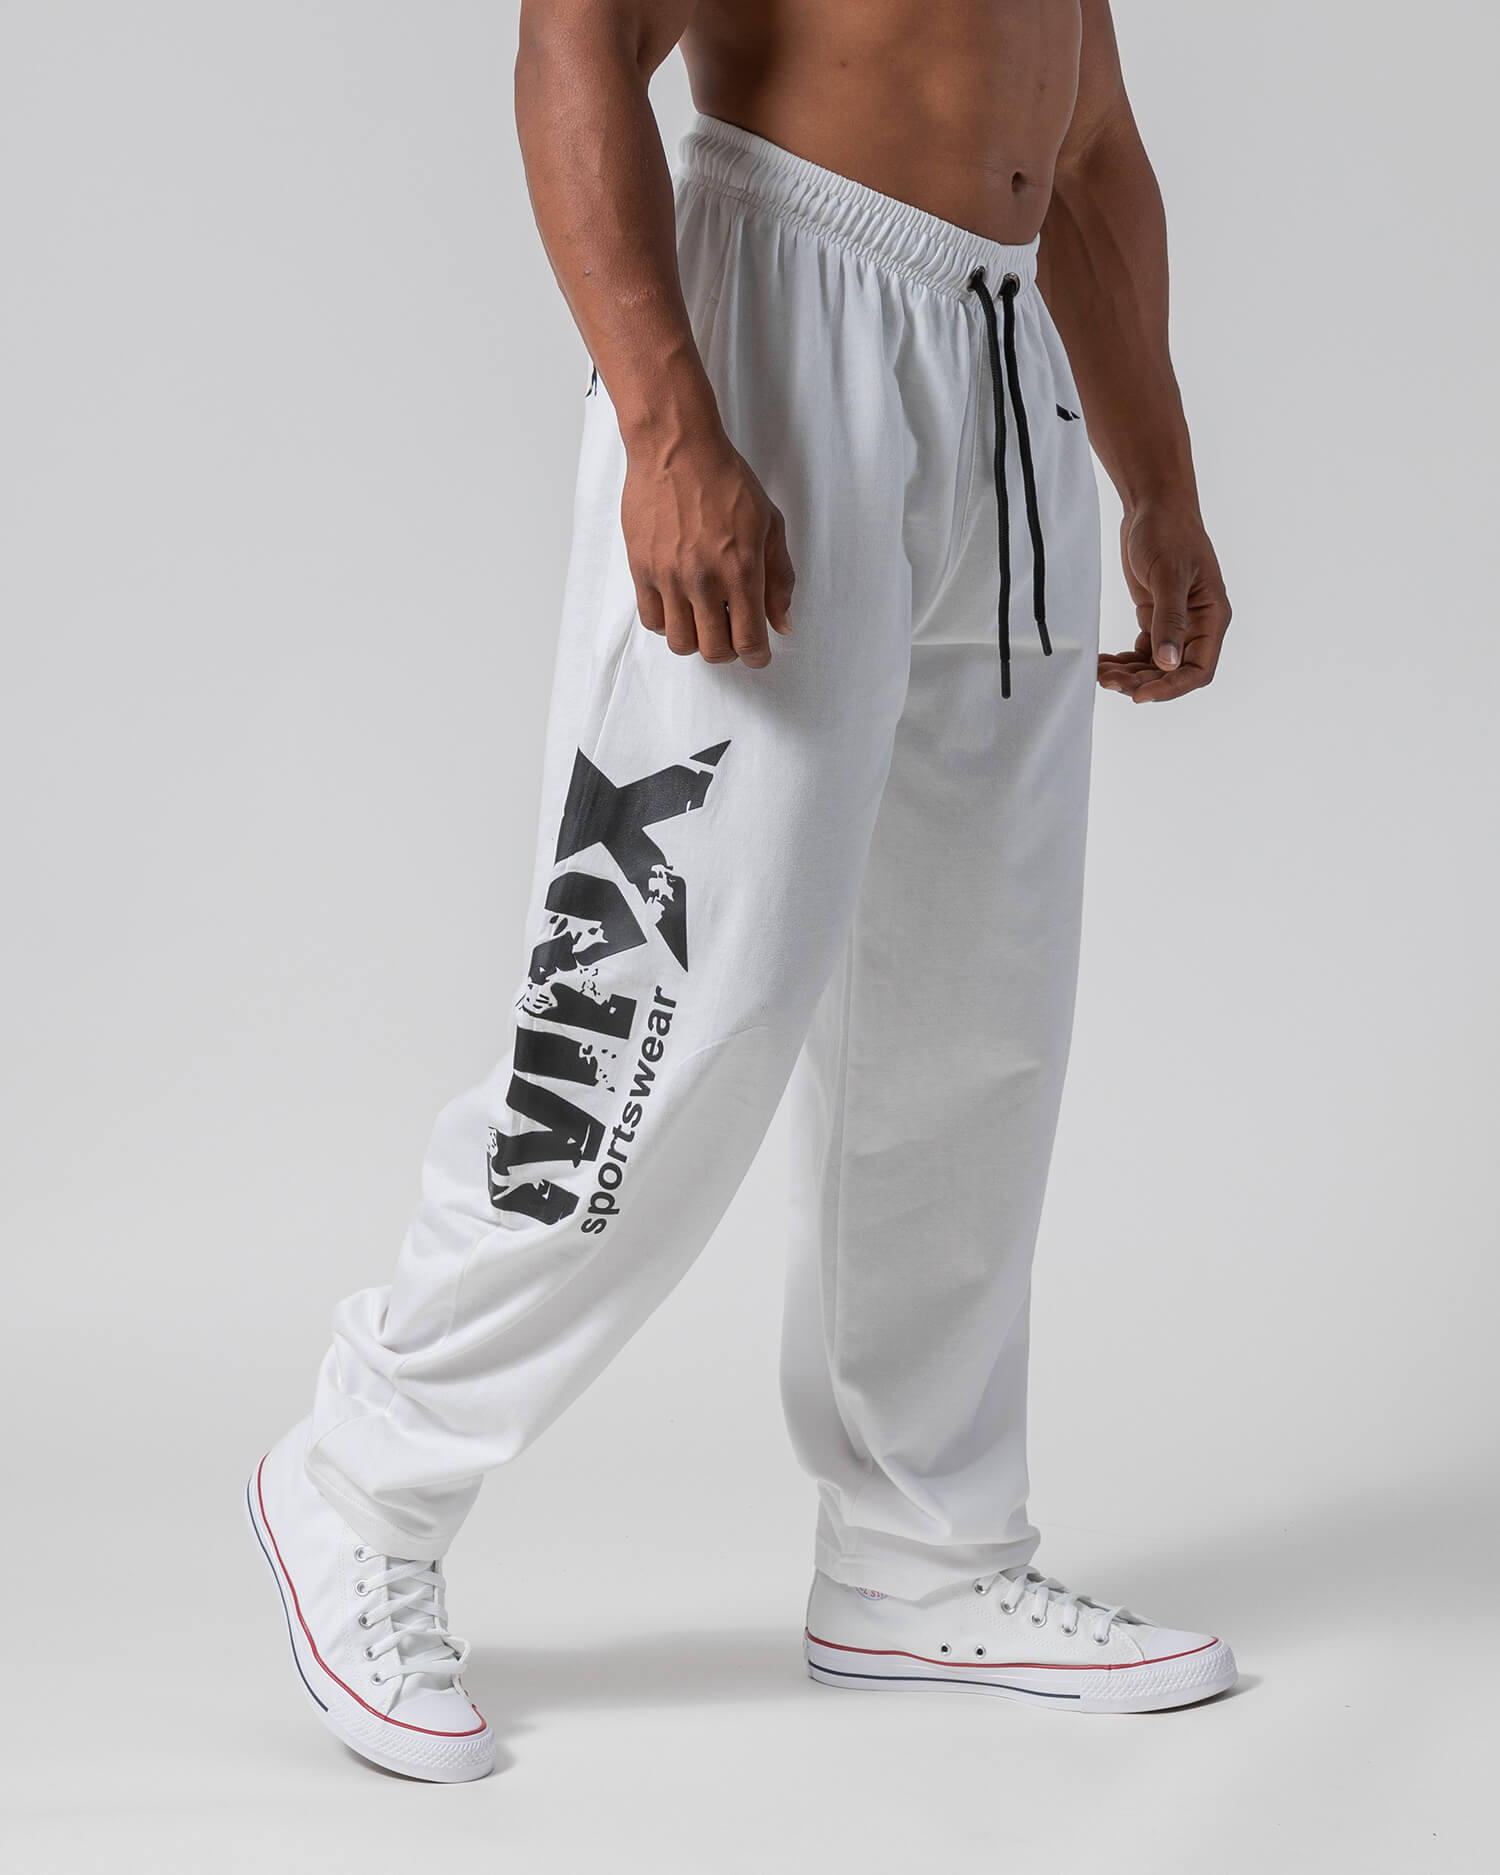 MNX Pantalones clásicos de culturismo, blanco - MNX Sportswear